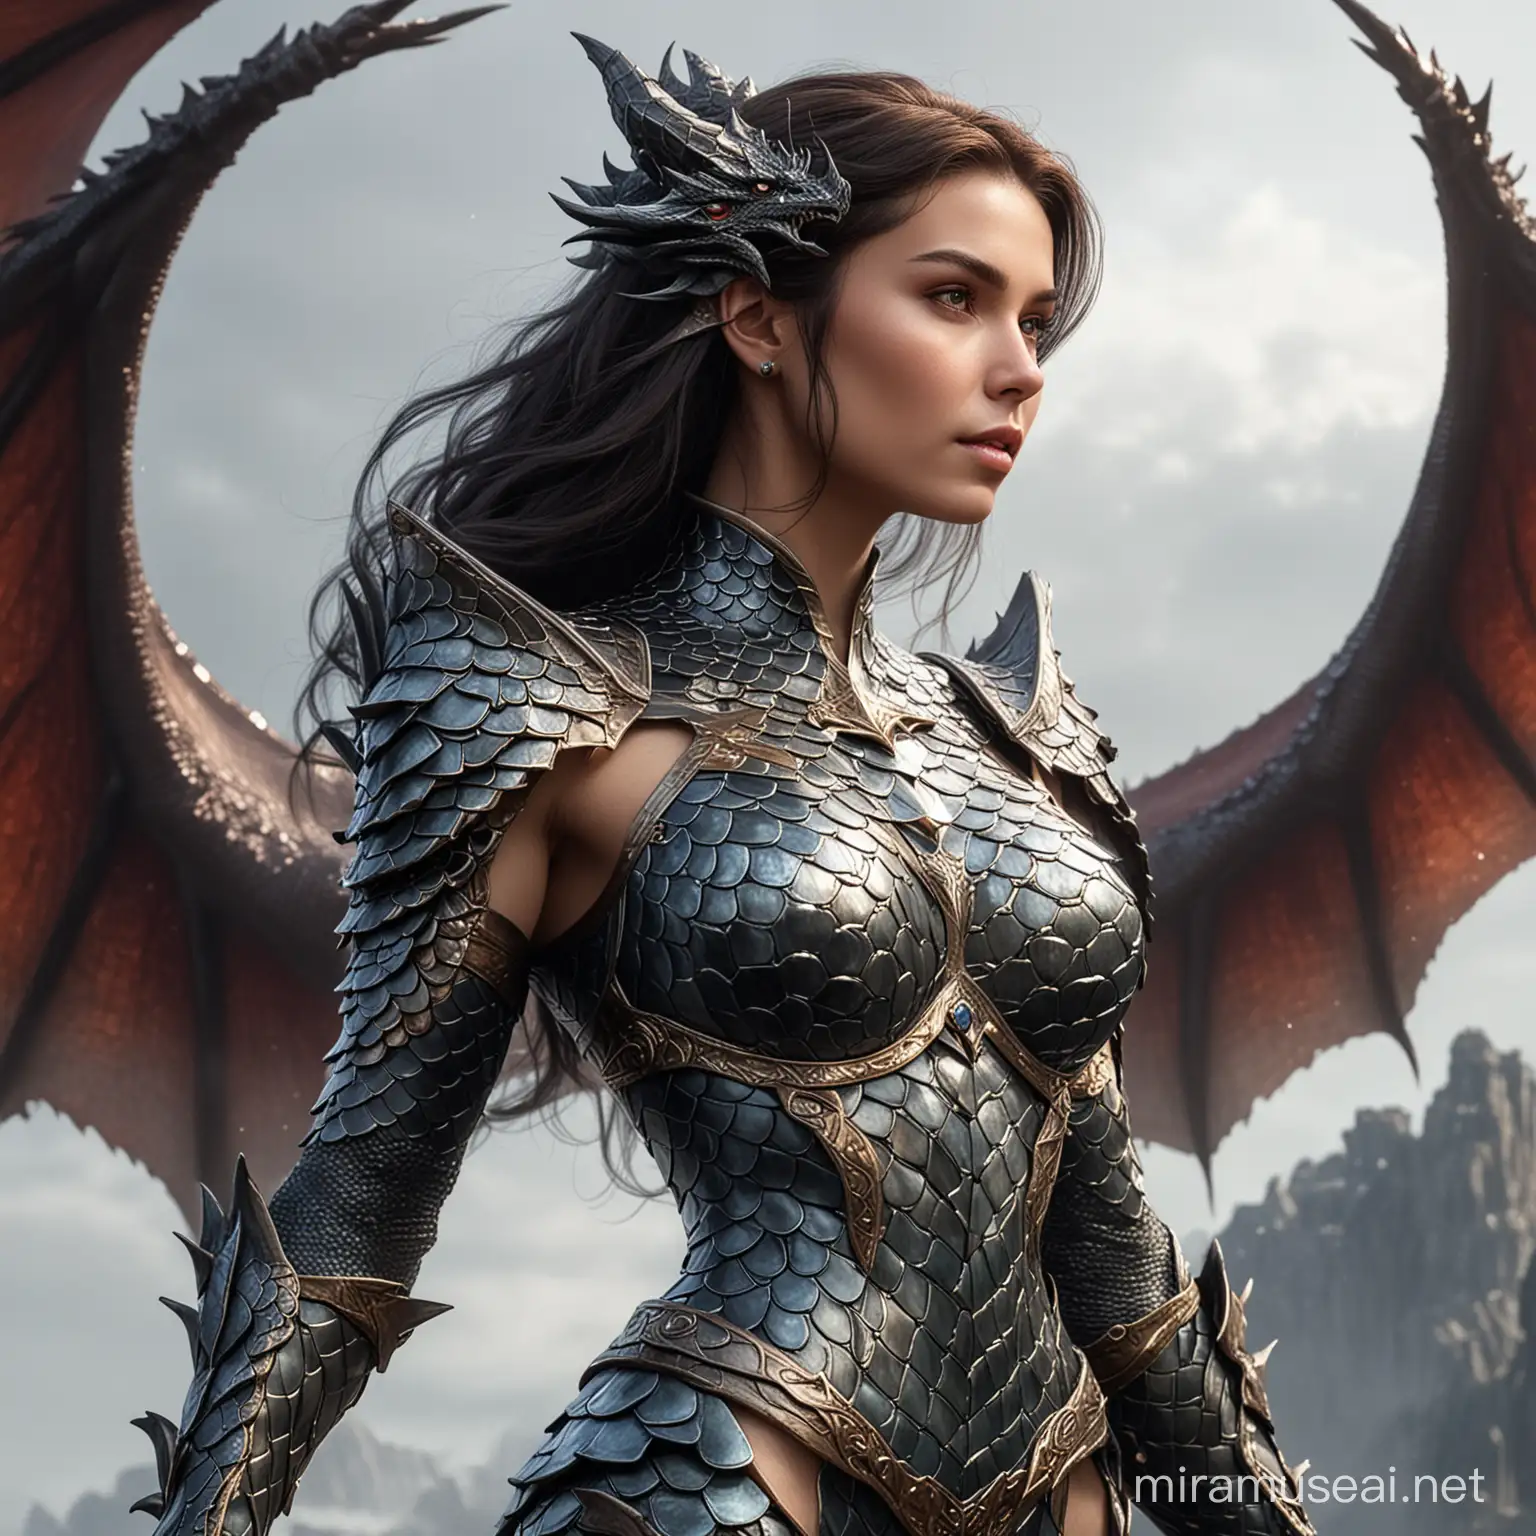 Dragon scales woman
